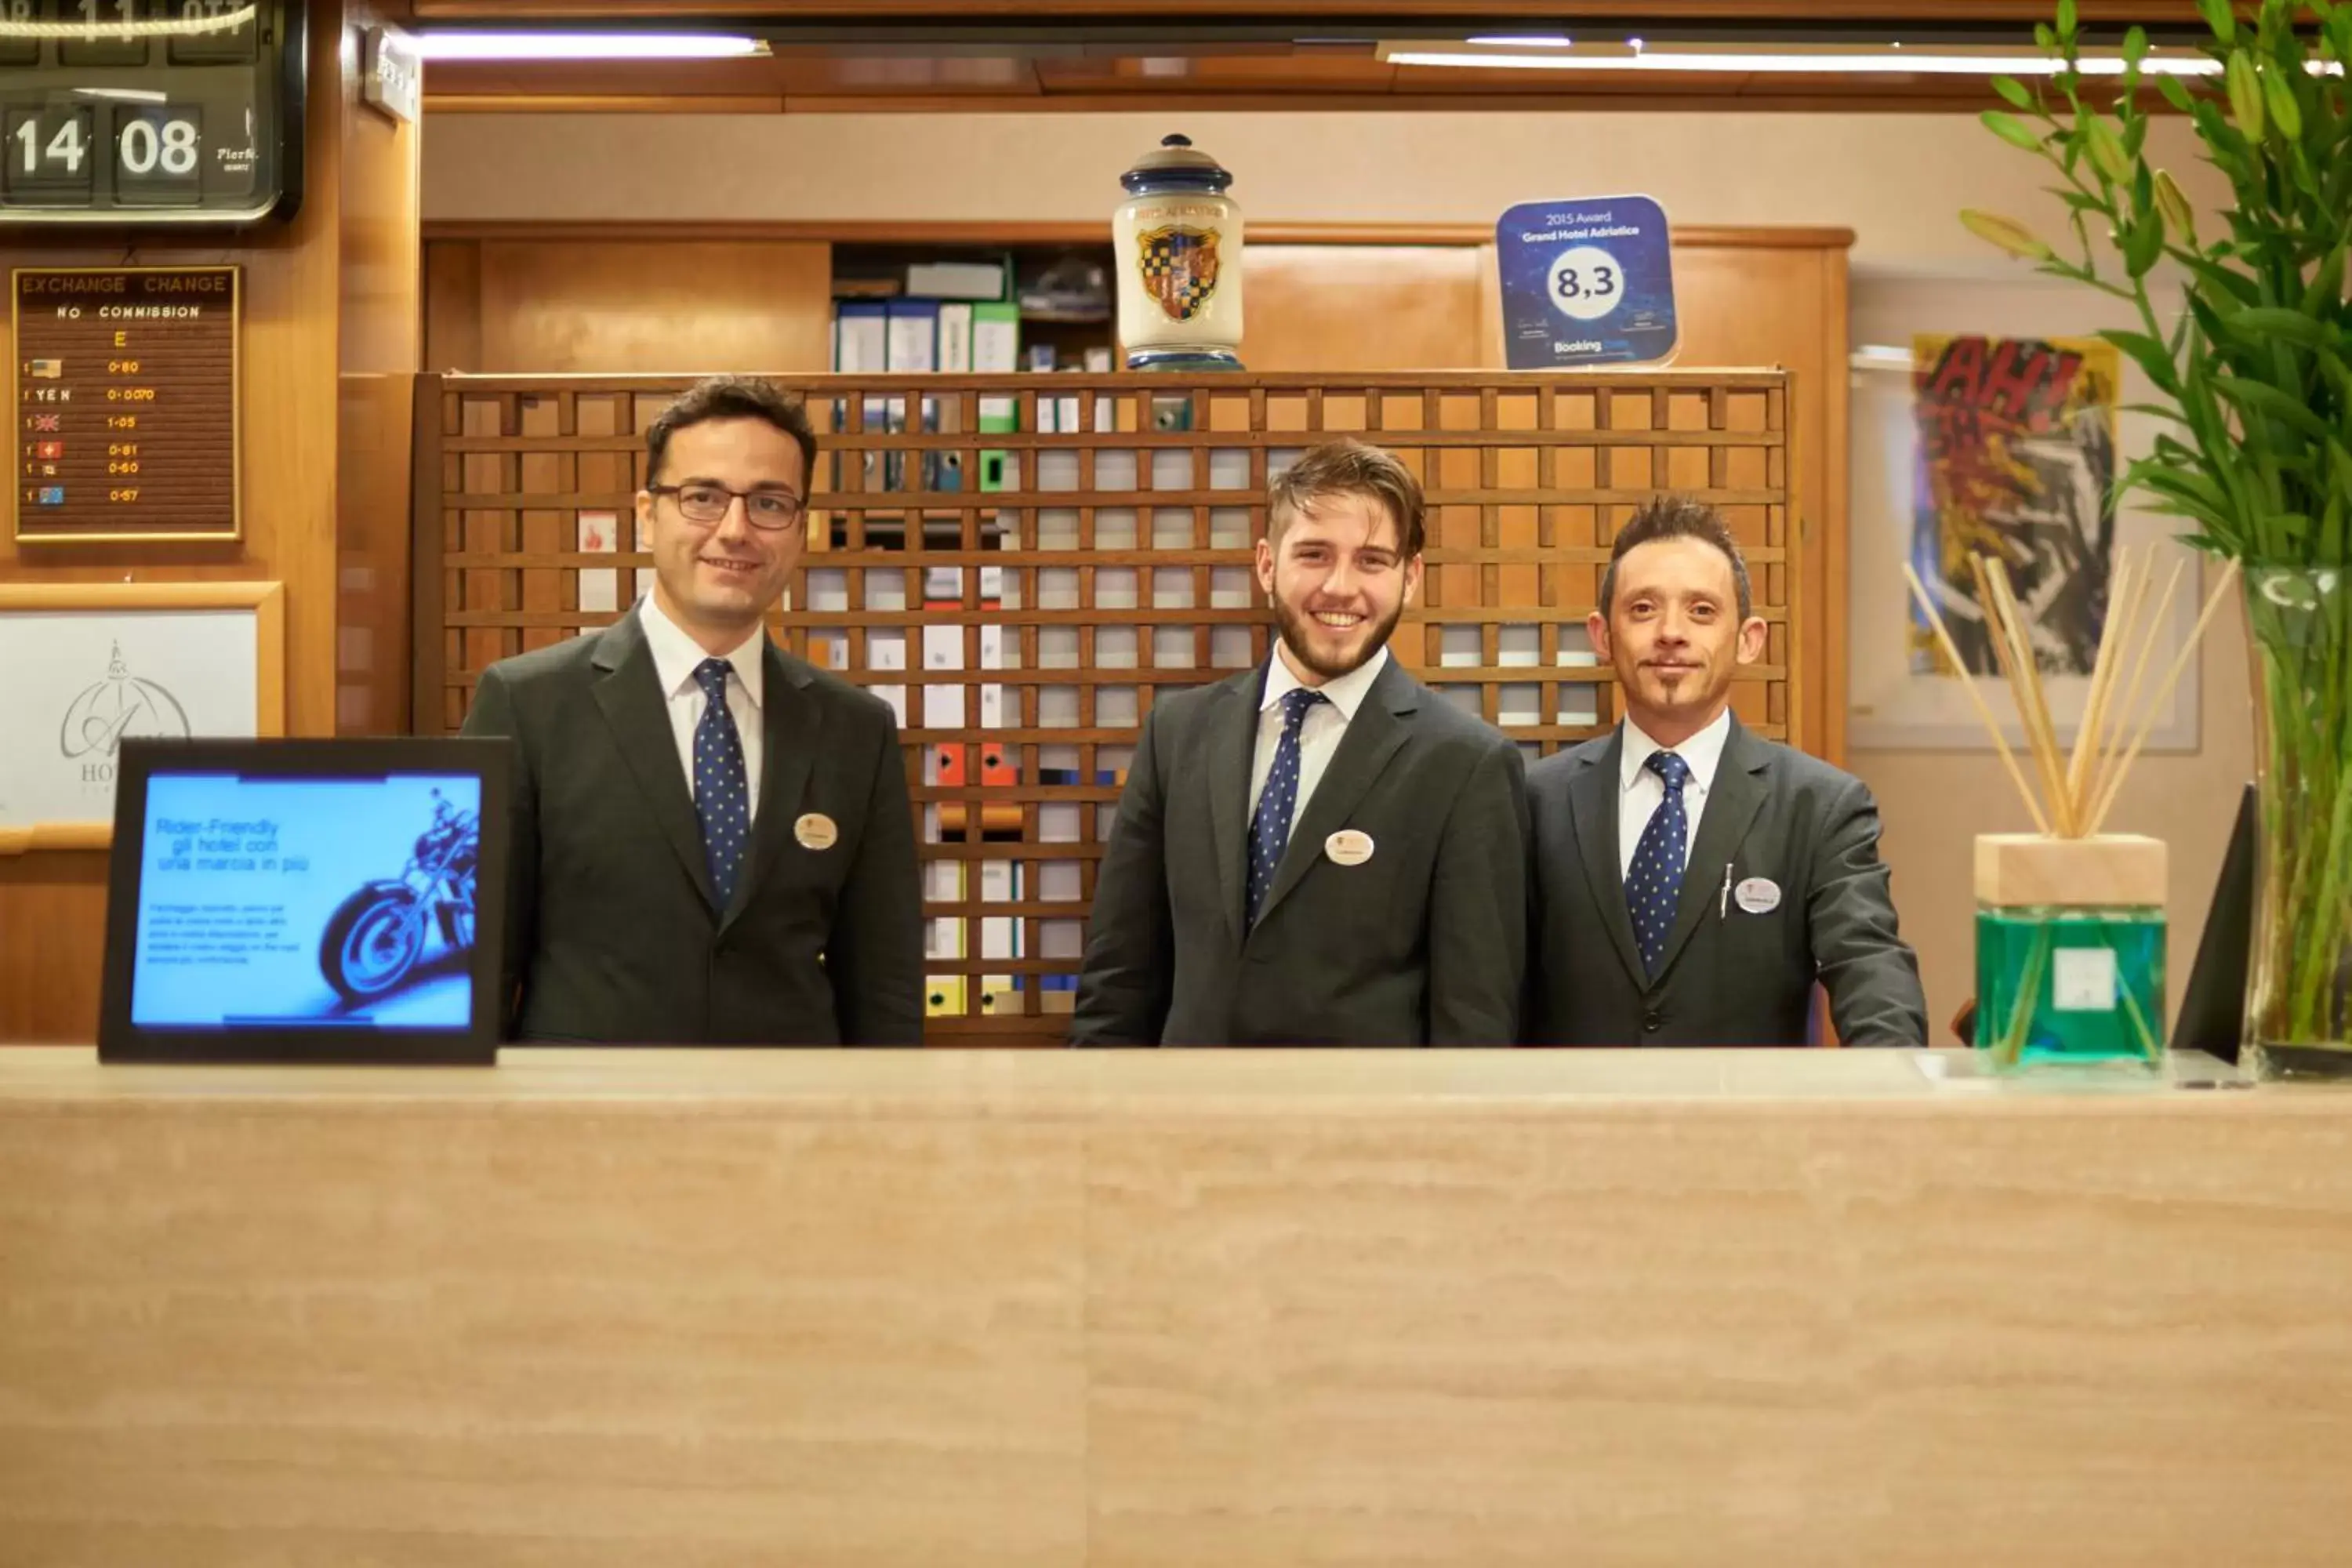 Staff in Grand Hotel Adriatico